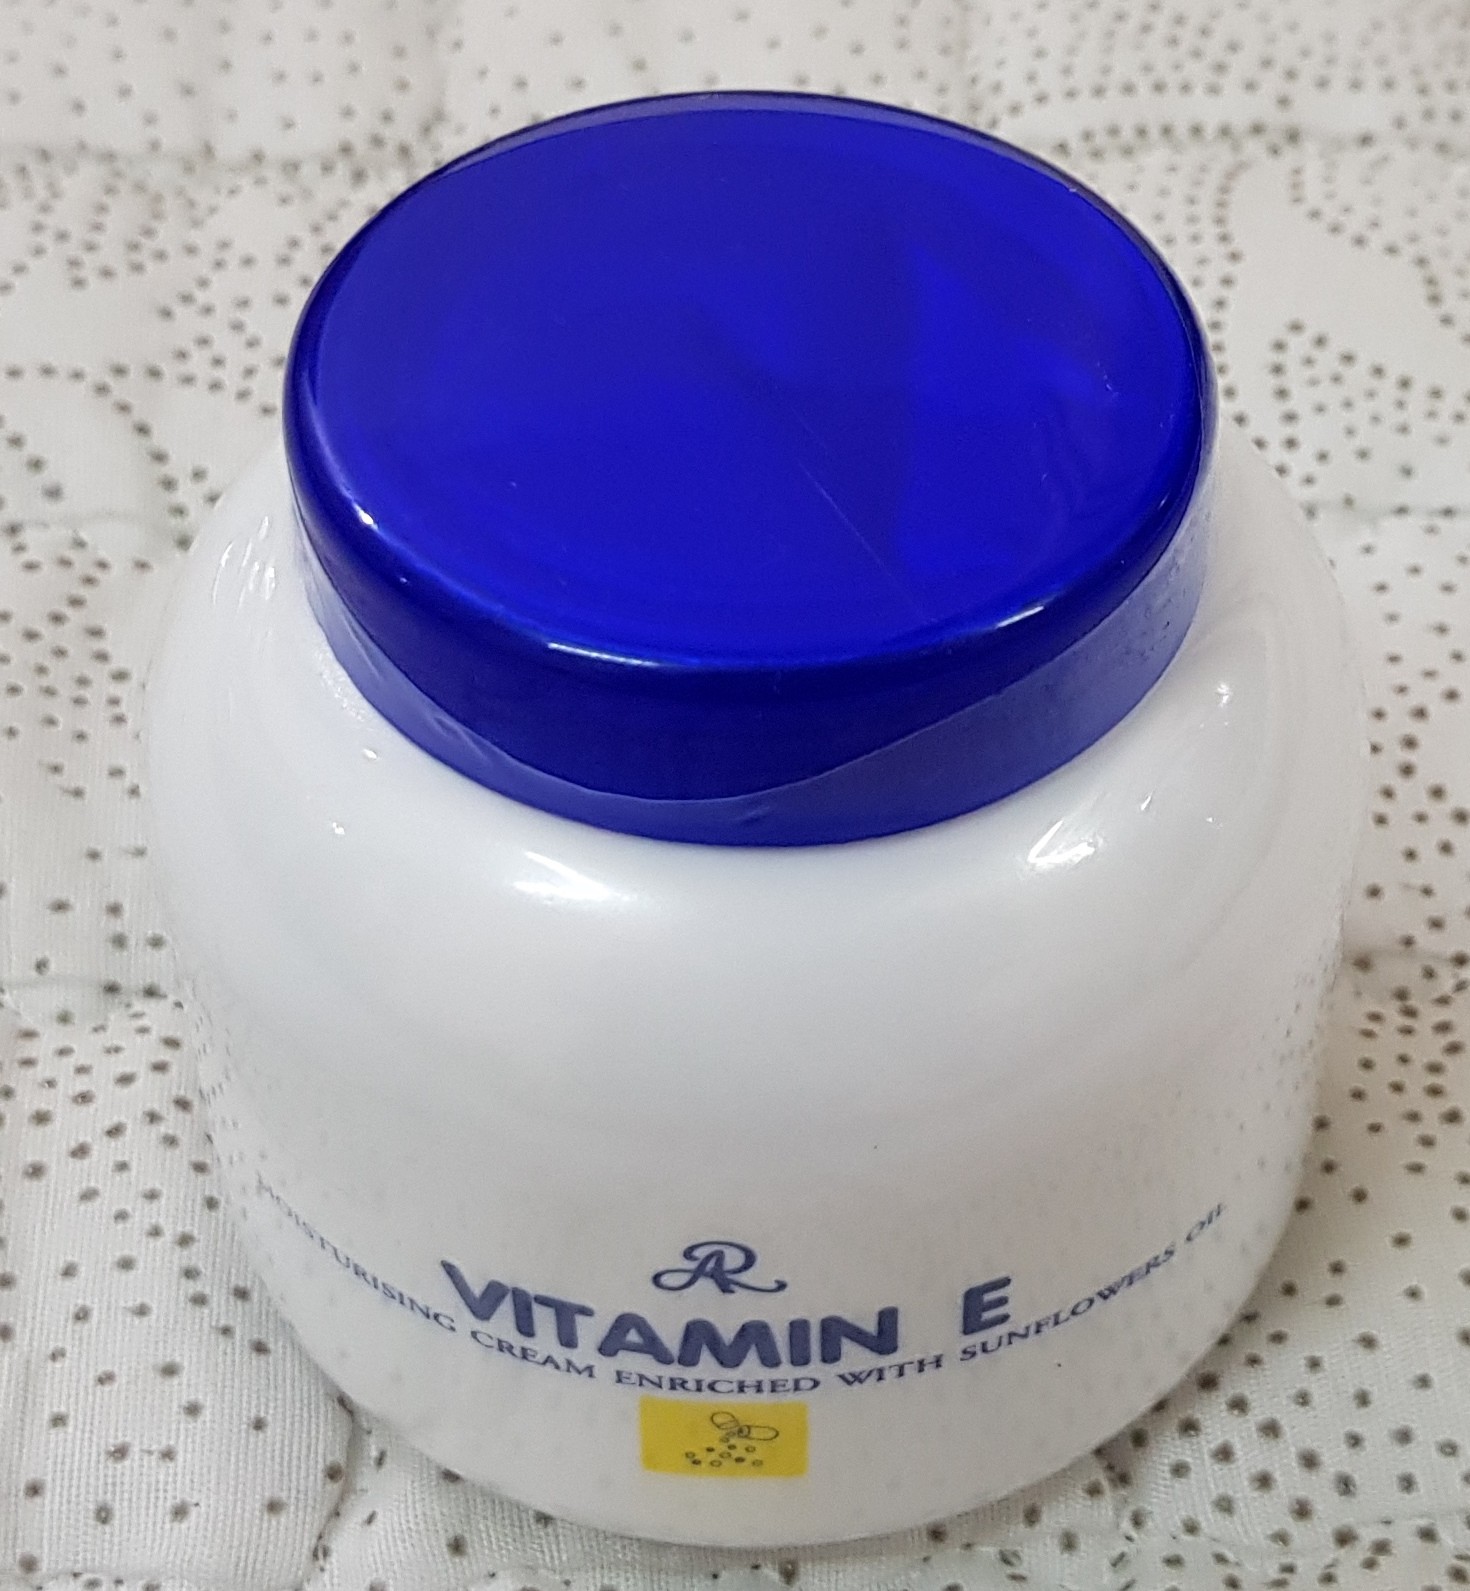 body-duong-the-vitamin-e-aron-thai-lan-732